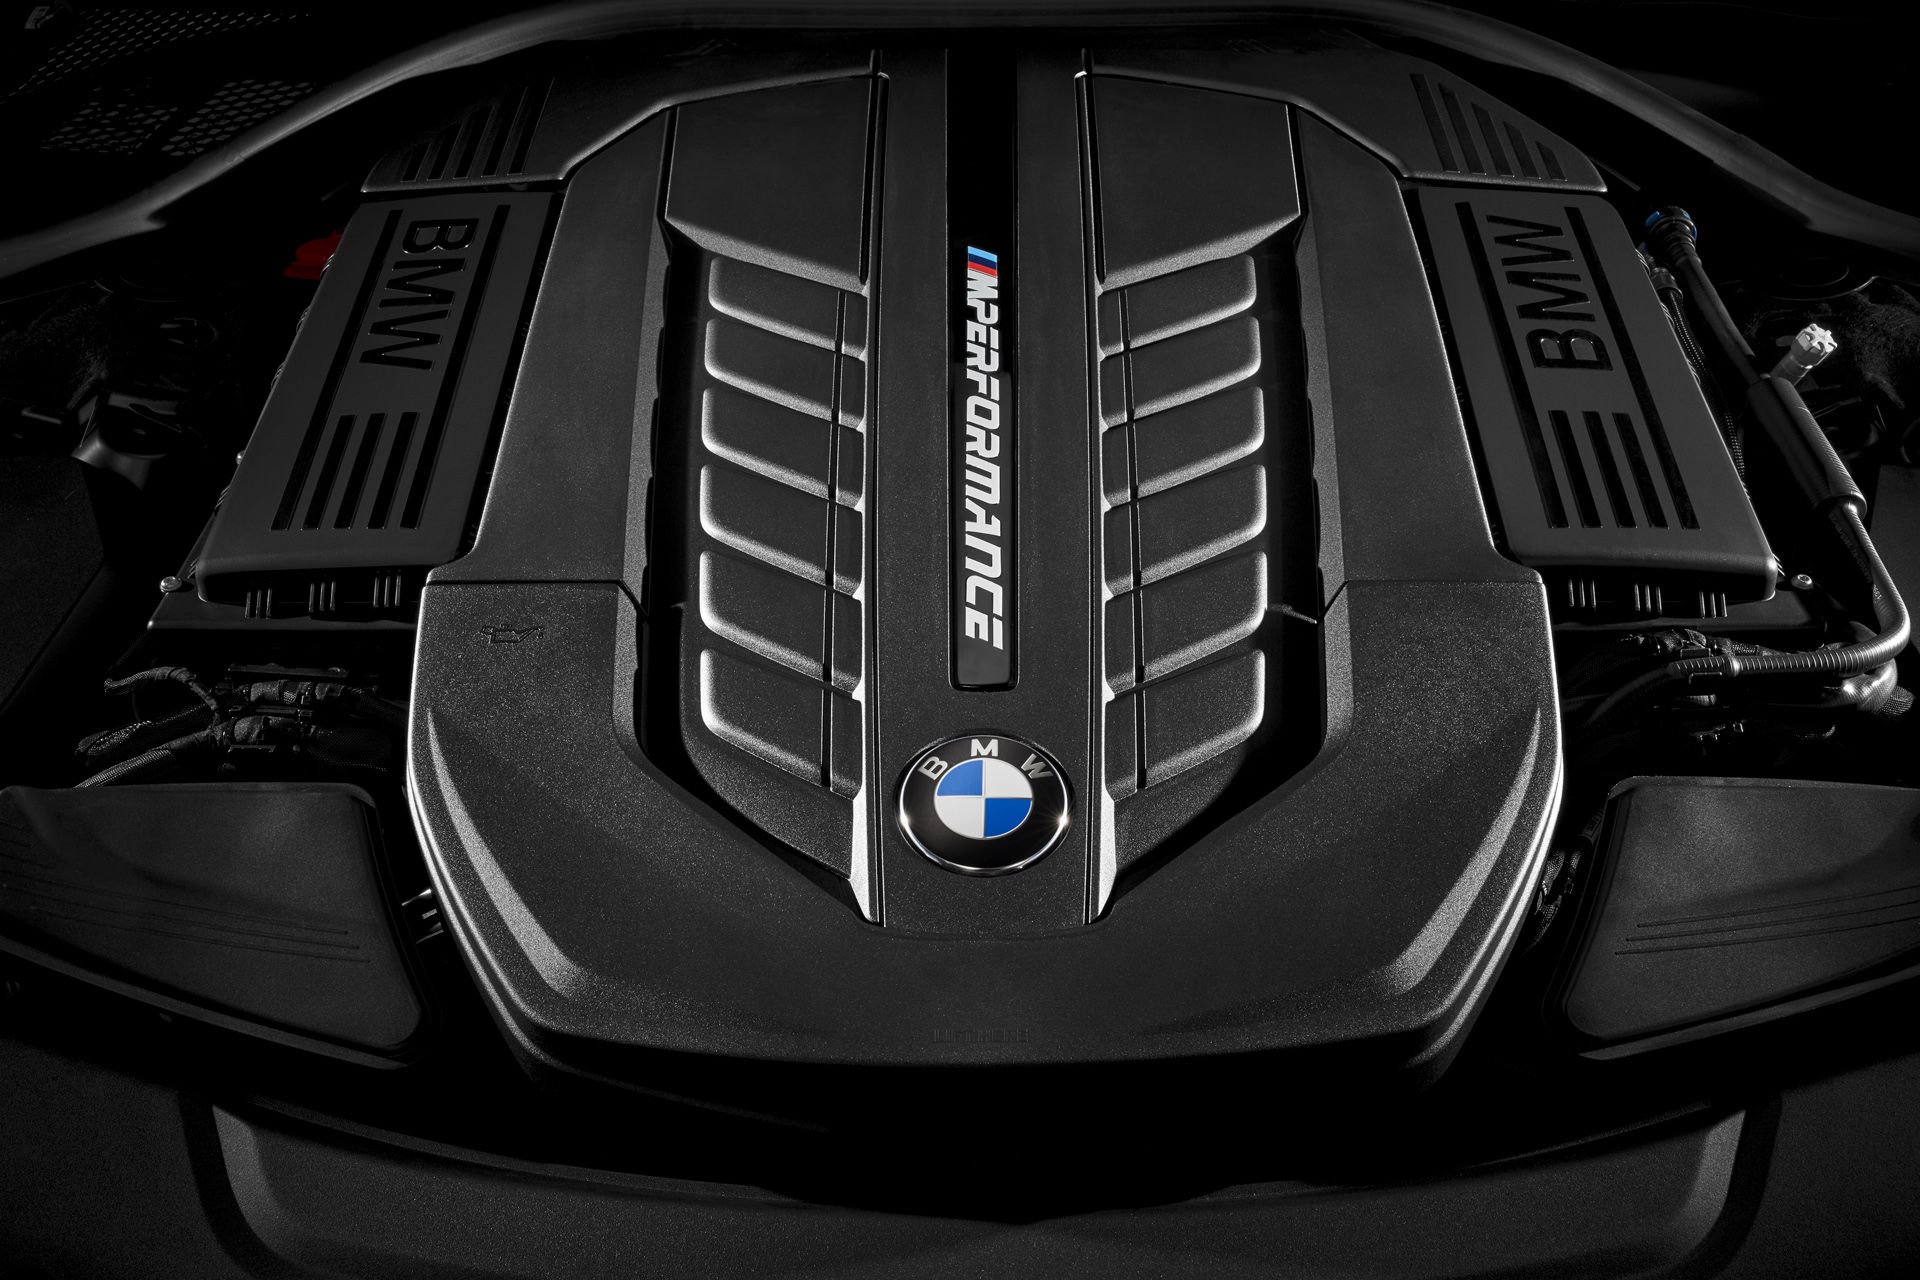 Така ли ще изглежда новото BMW X7?